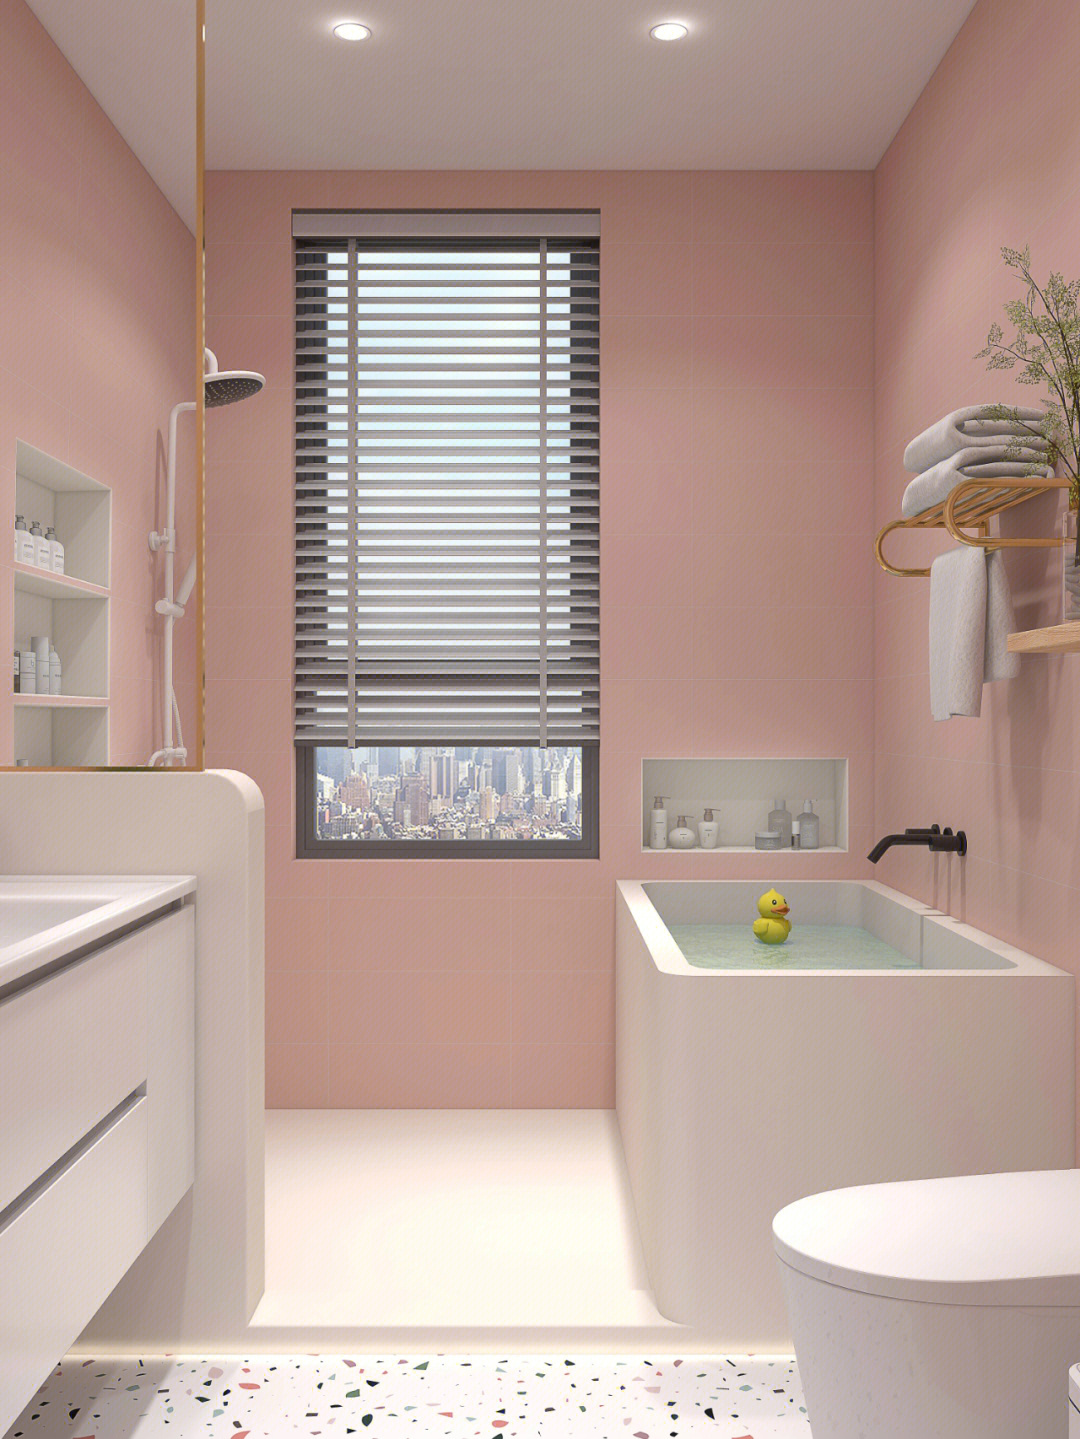 砌浴缸真是yyds简约白色的浴室柜也很百搭小熊镜就是少女卫生间的首选